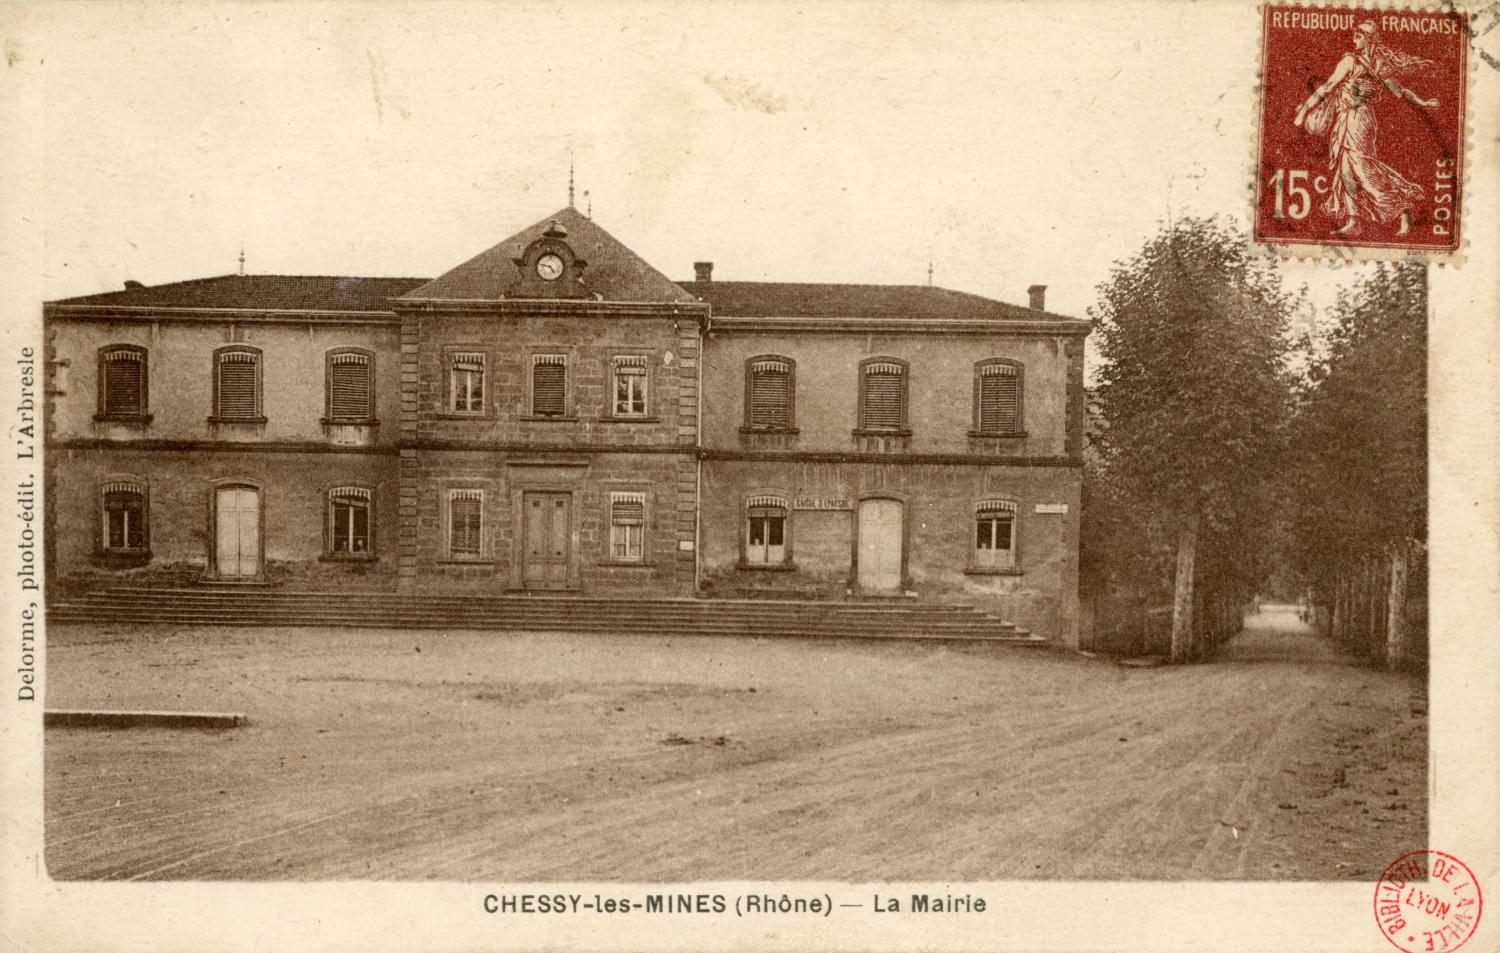 Chessy-les-Mines (Rhône). - La mairie